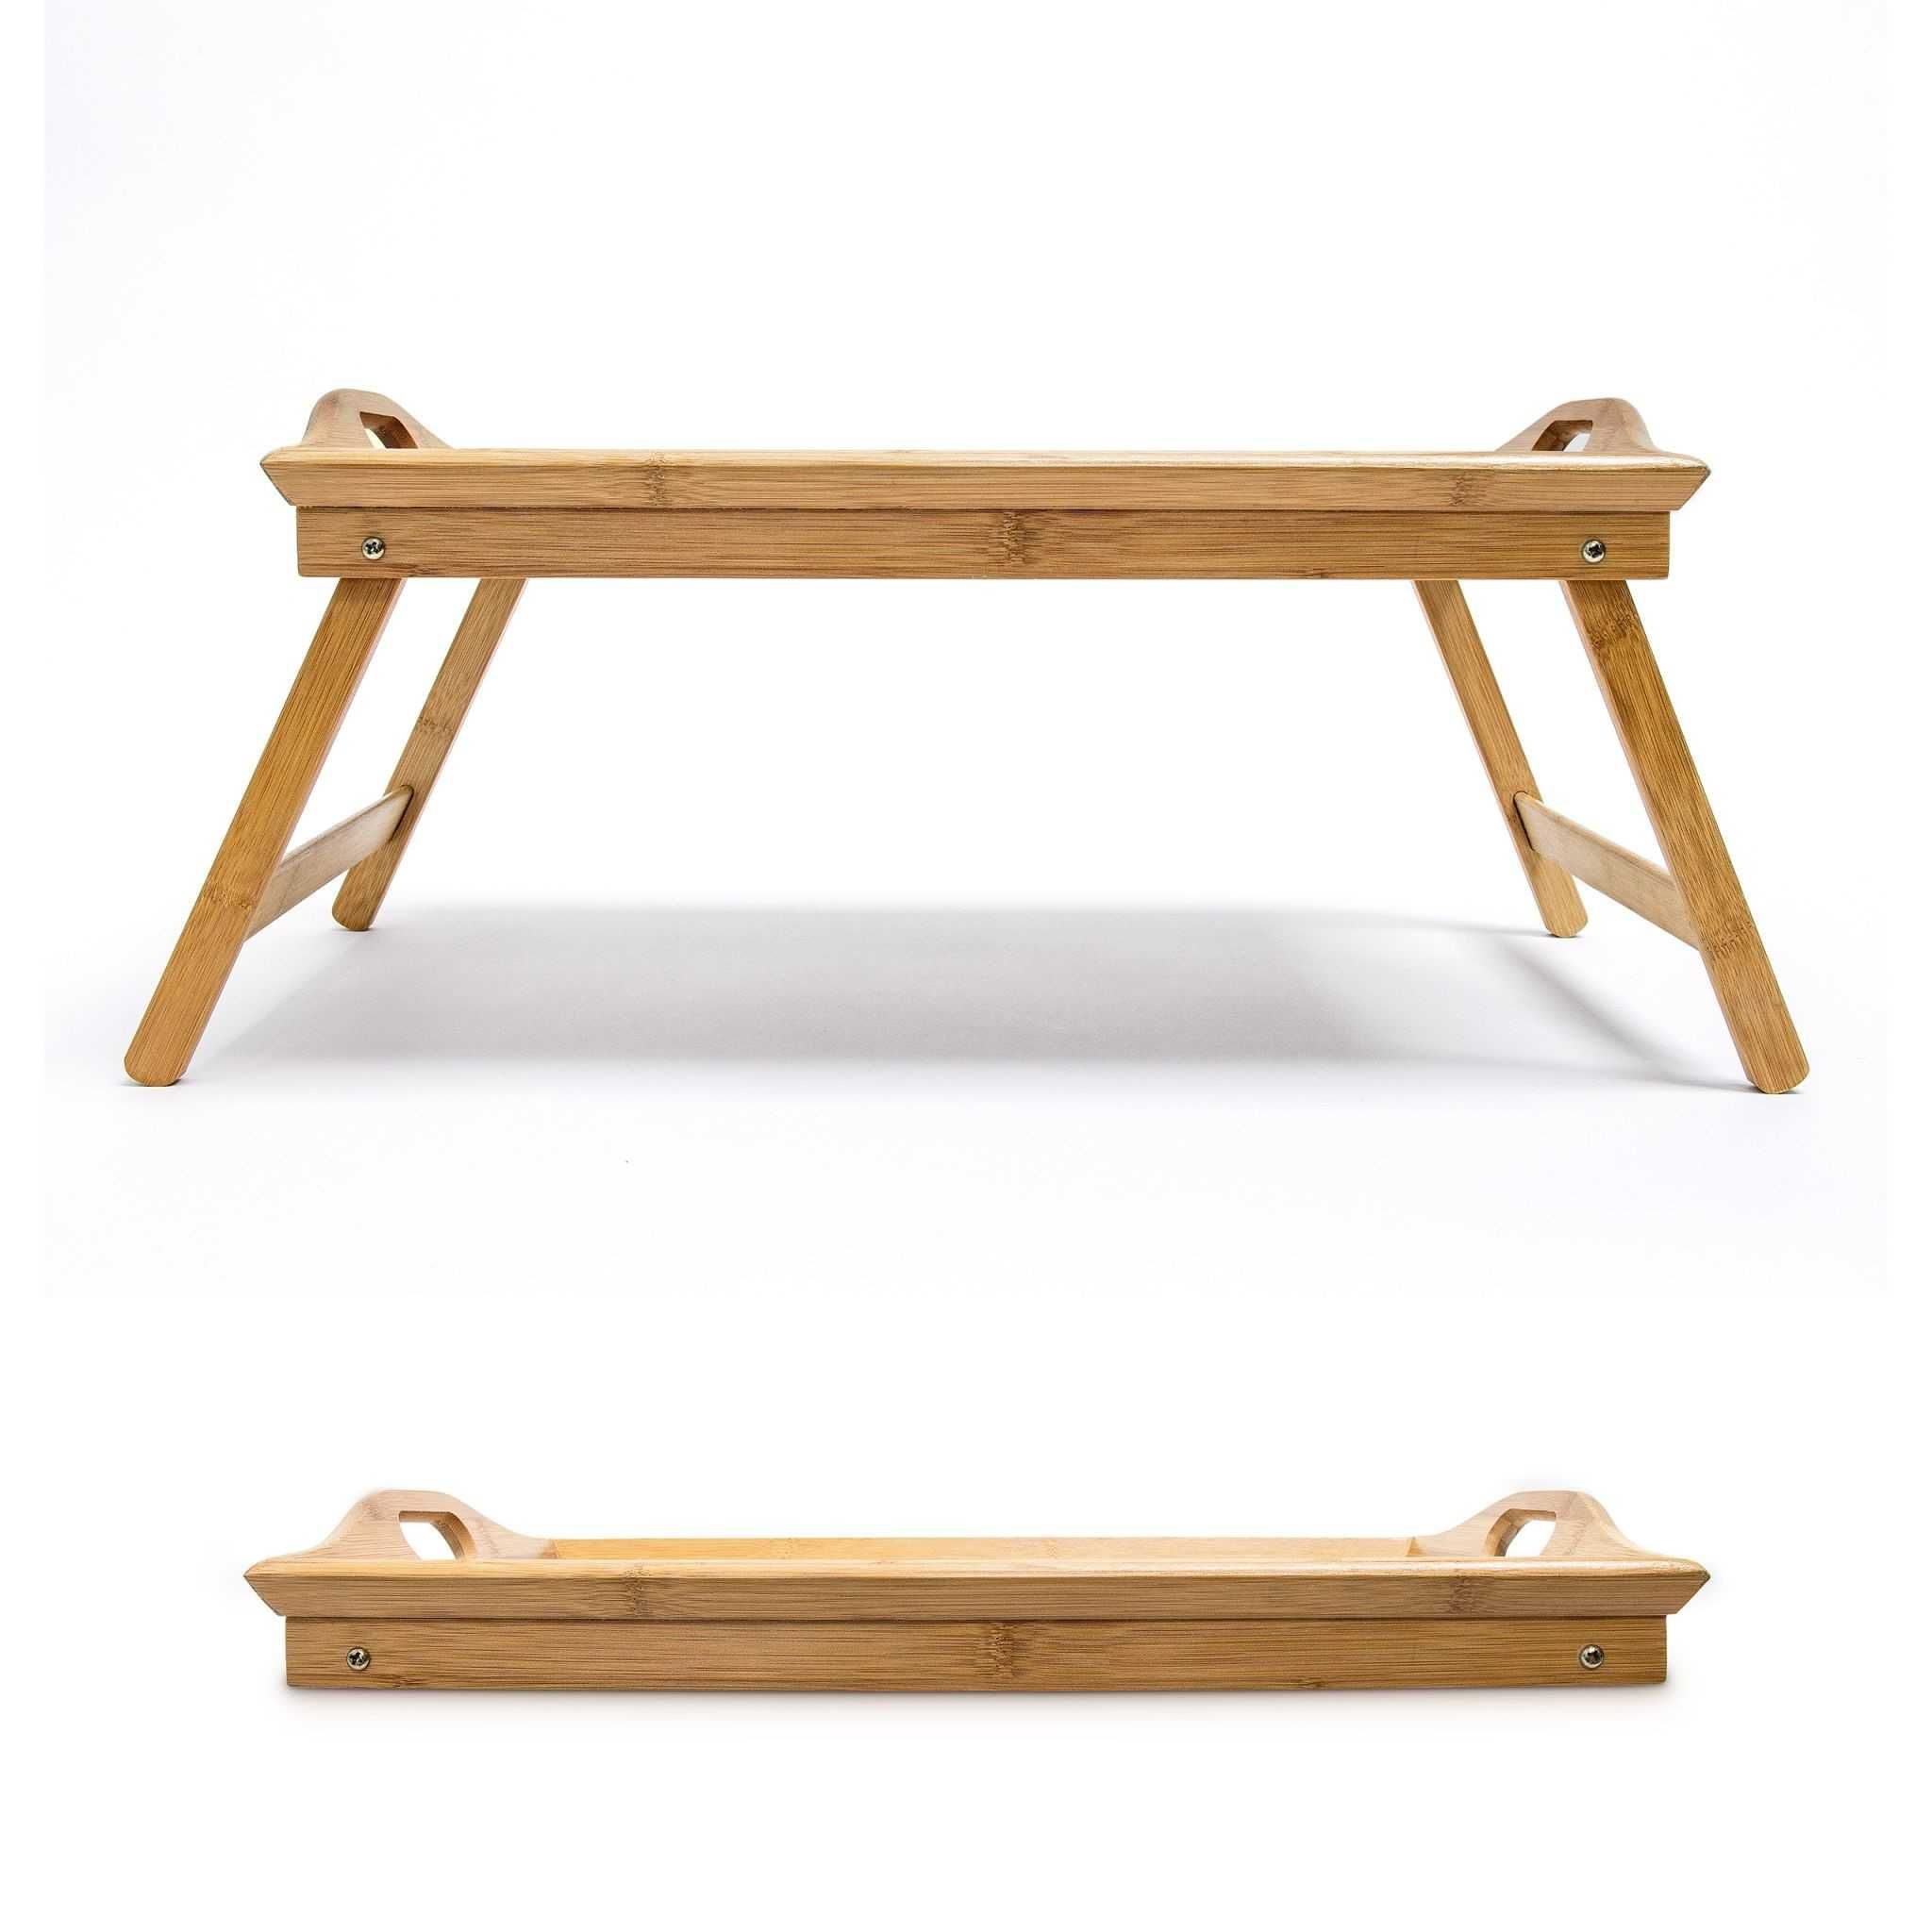 Masuta bambus servire la pat, manere transport, pliabila, 52x33 cm